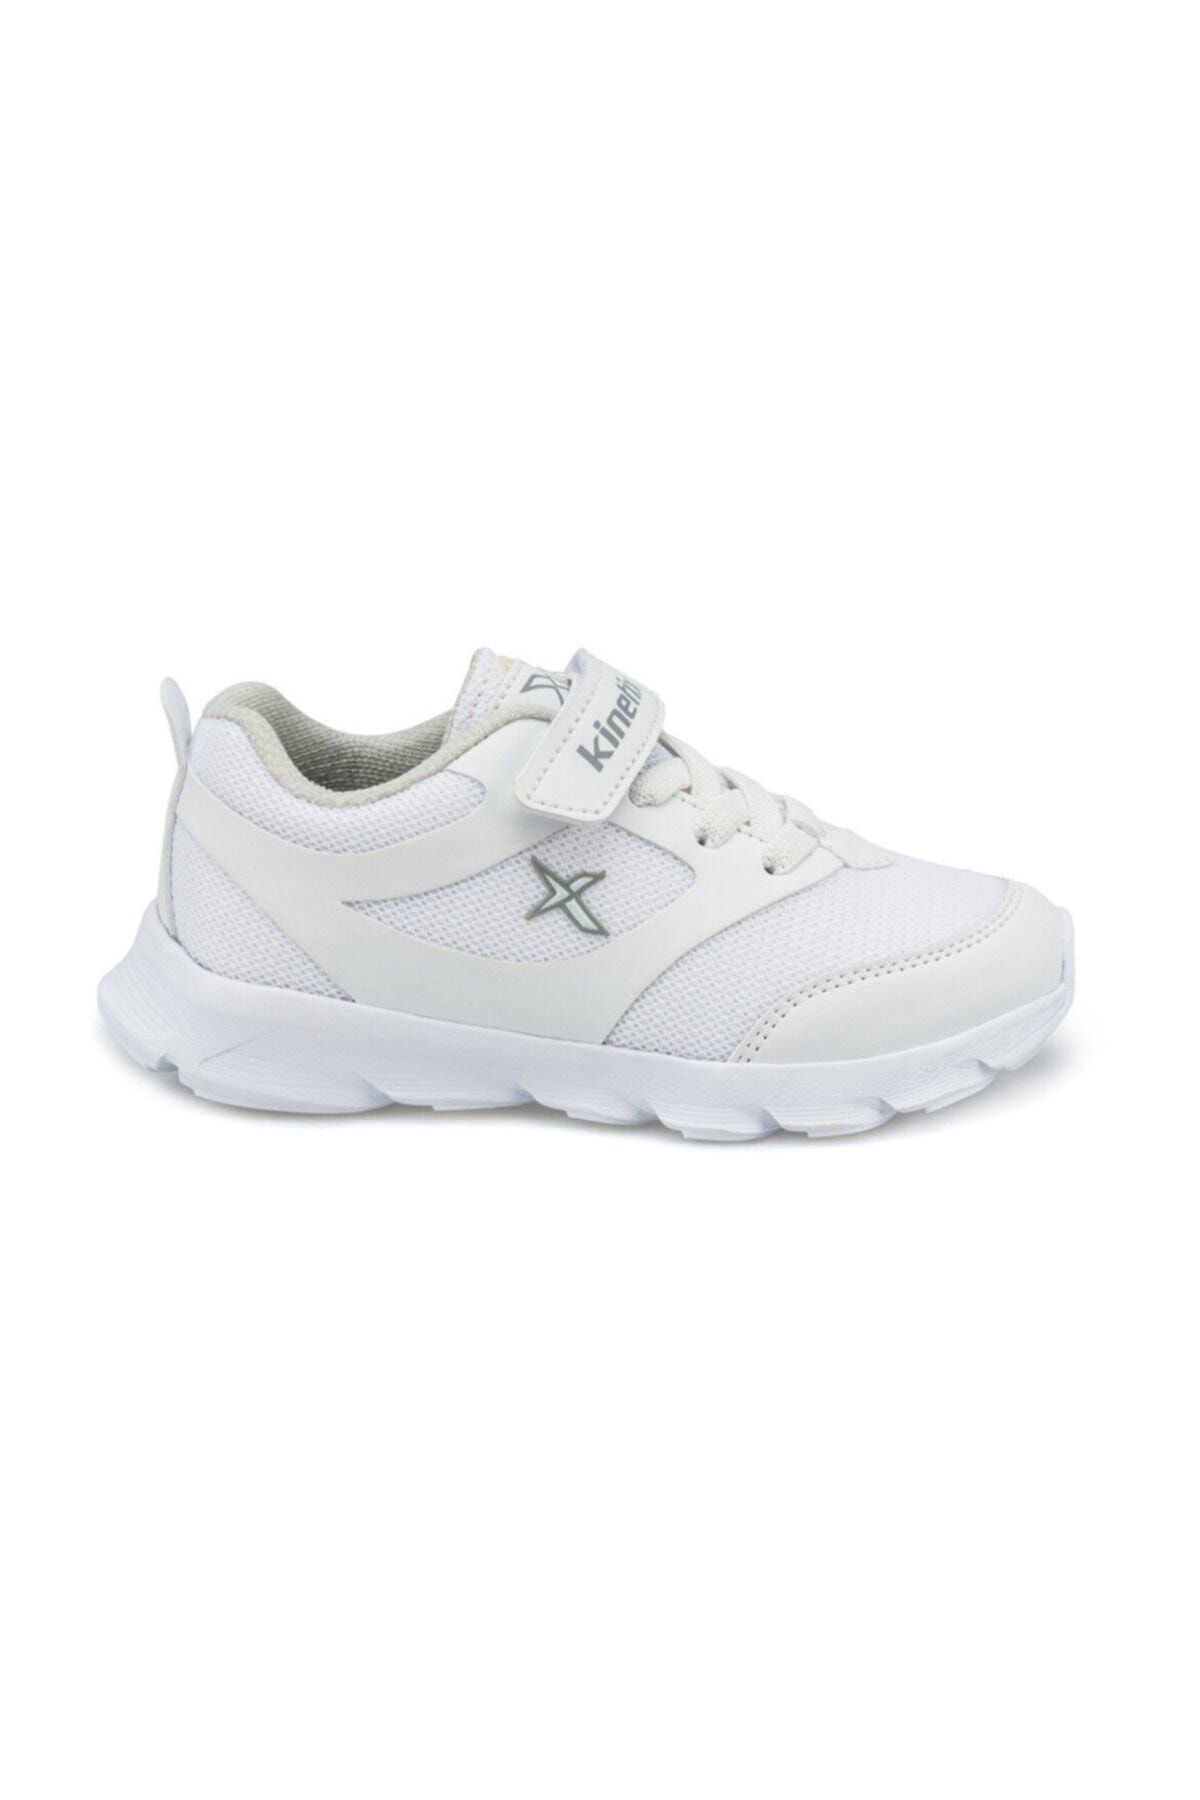 Kinetix ALMERA J Beyaz Erkek Çocuk Yürüyüş Ayakkabısı 100355822